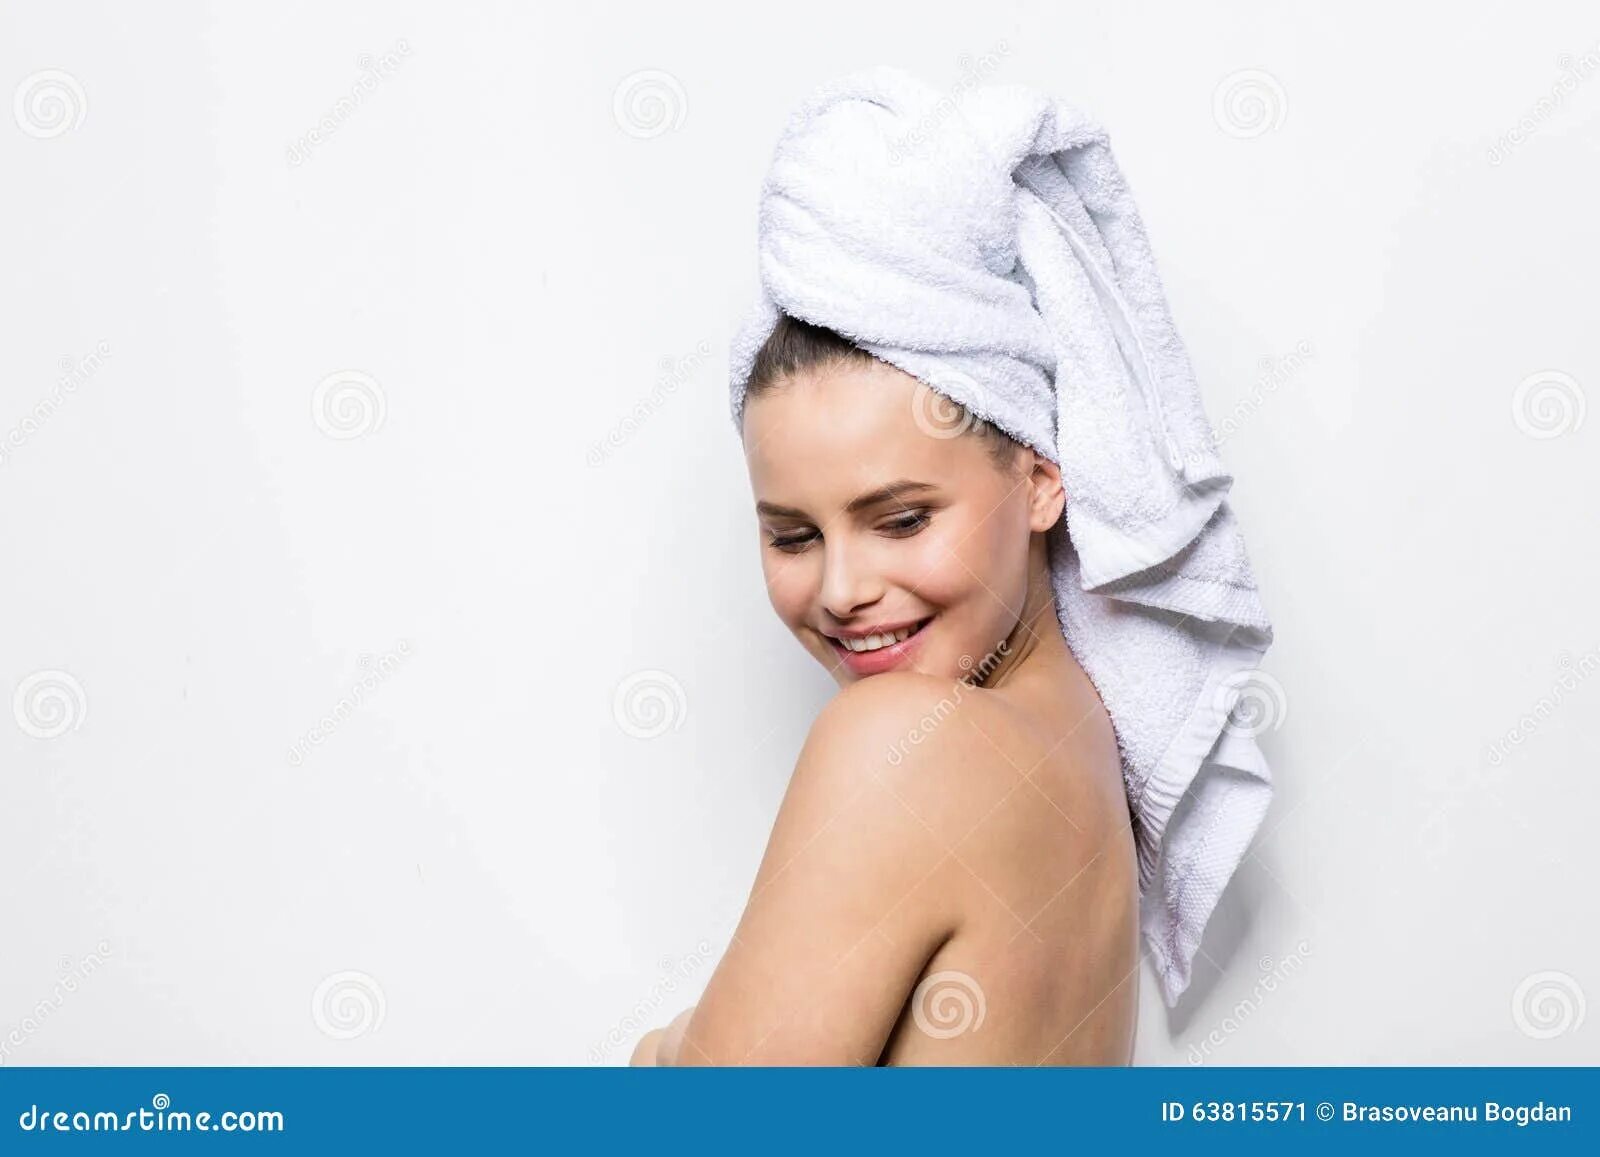 Ходит в полотенце. Полотенце на голове. Девушка в полотенце. Баба с полотенцем на голове. Лицо девушки с полотенцем на голове.